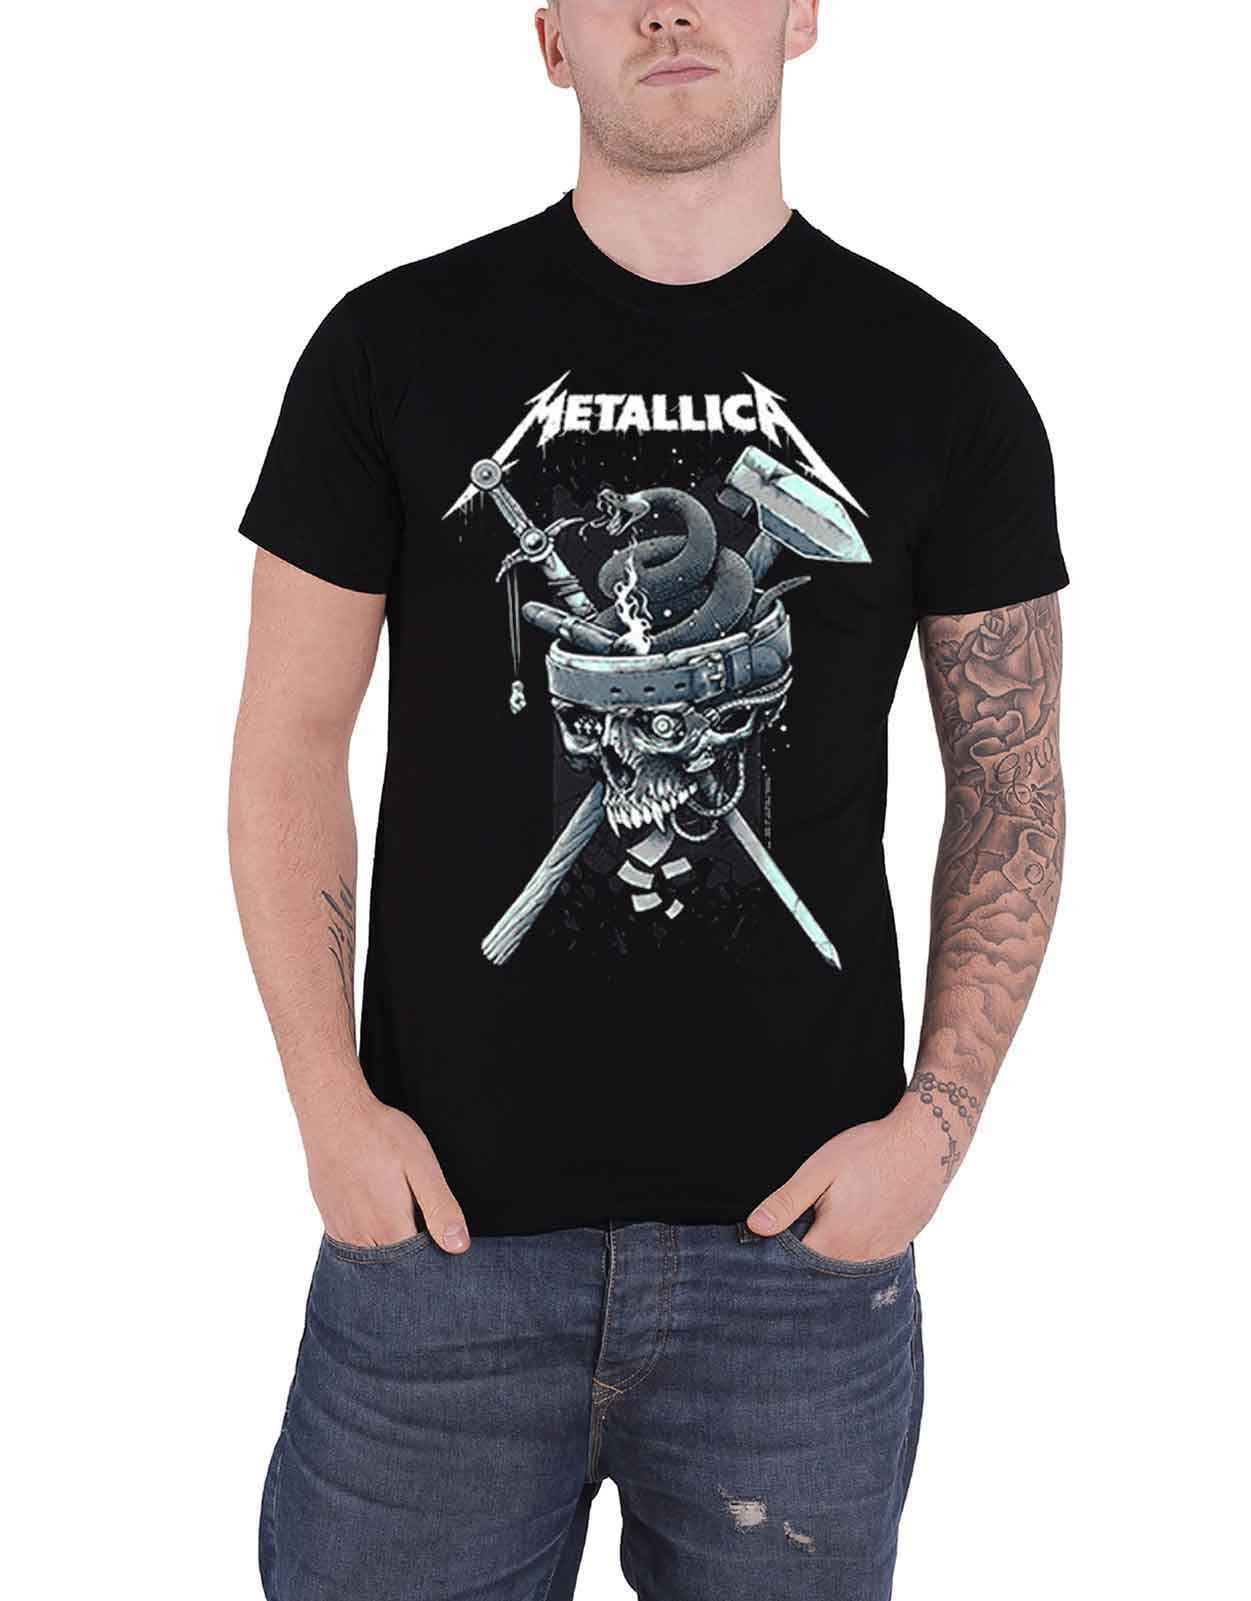 Metallica History Männer T-Shirt schwarz XL 100% Baumwolle Band-Merch, Bands